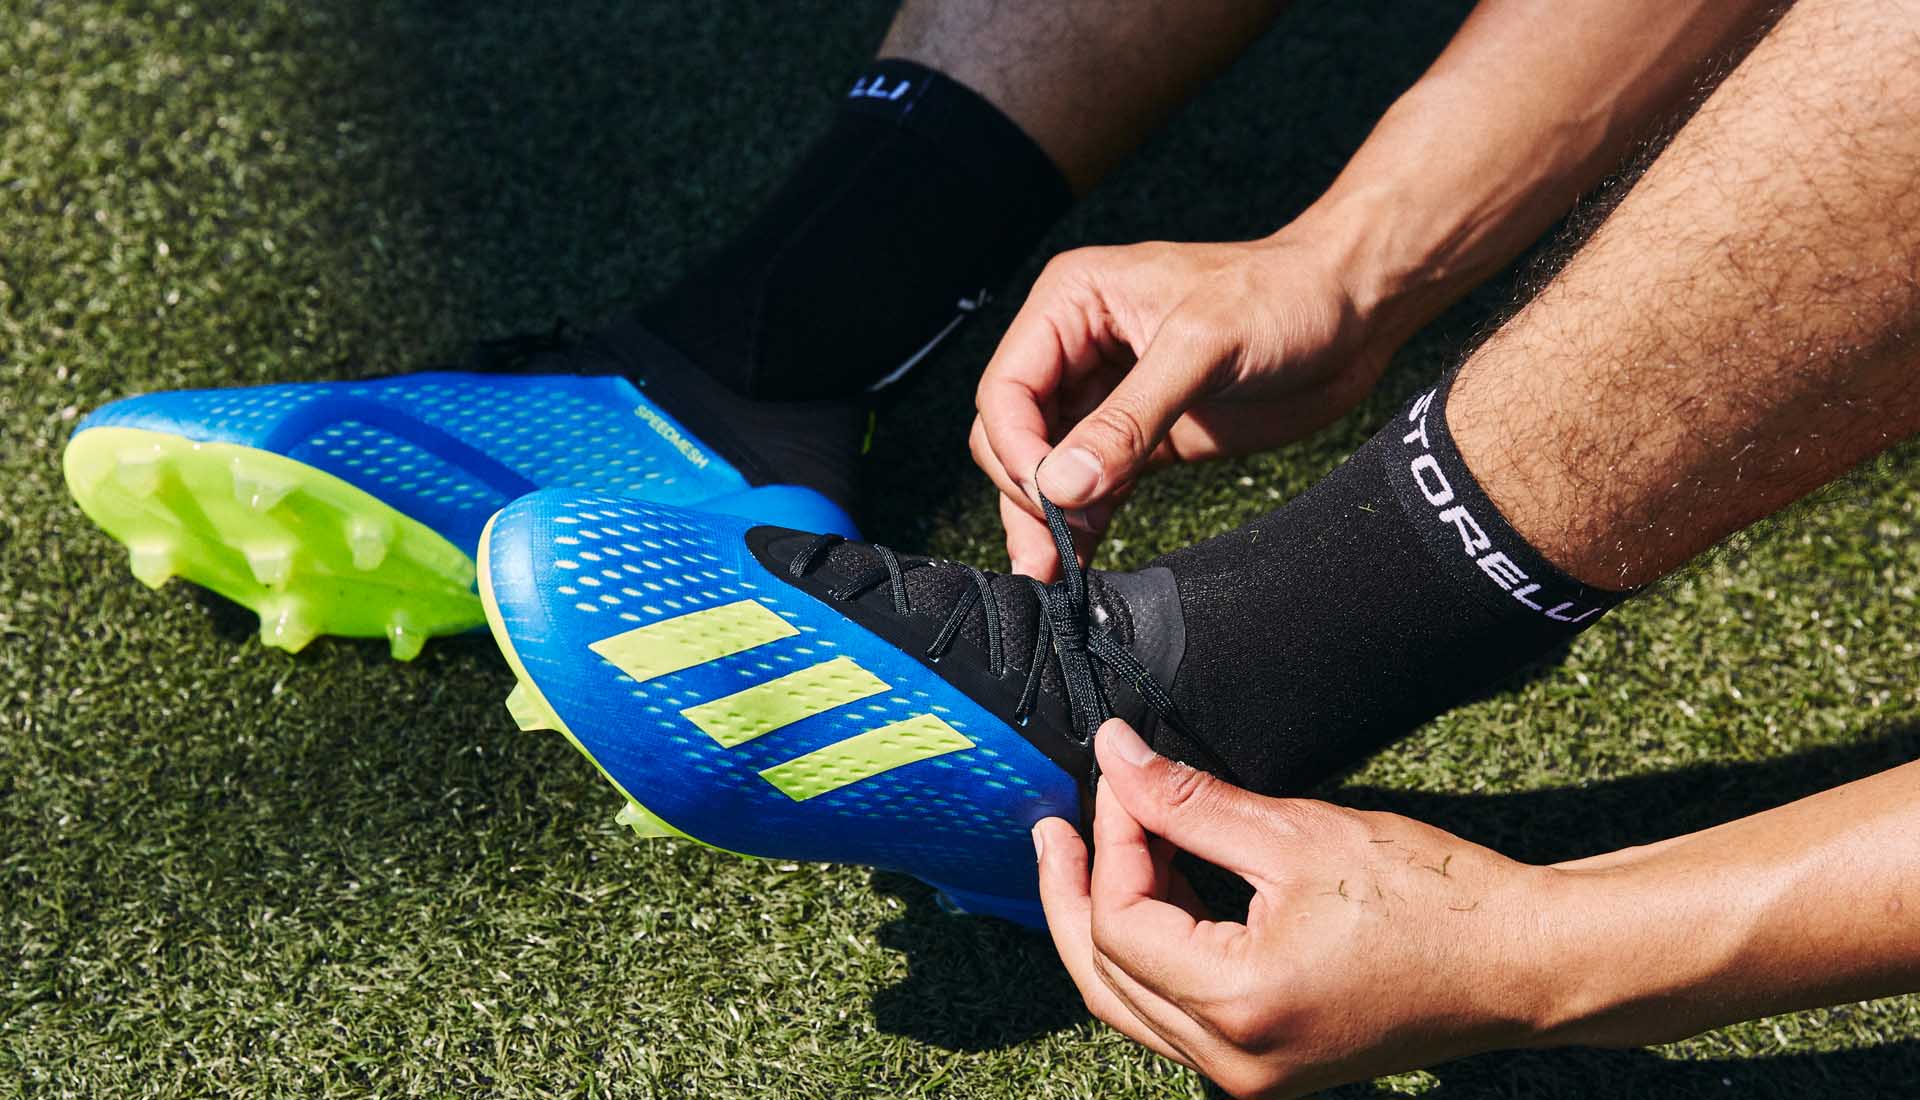 Giày đá bóng Adidas X18.1 đã được ra mắt với rất nhiều gam màu đẹp mắt